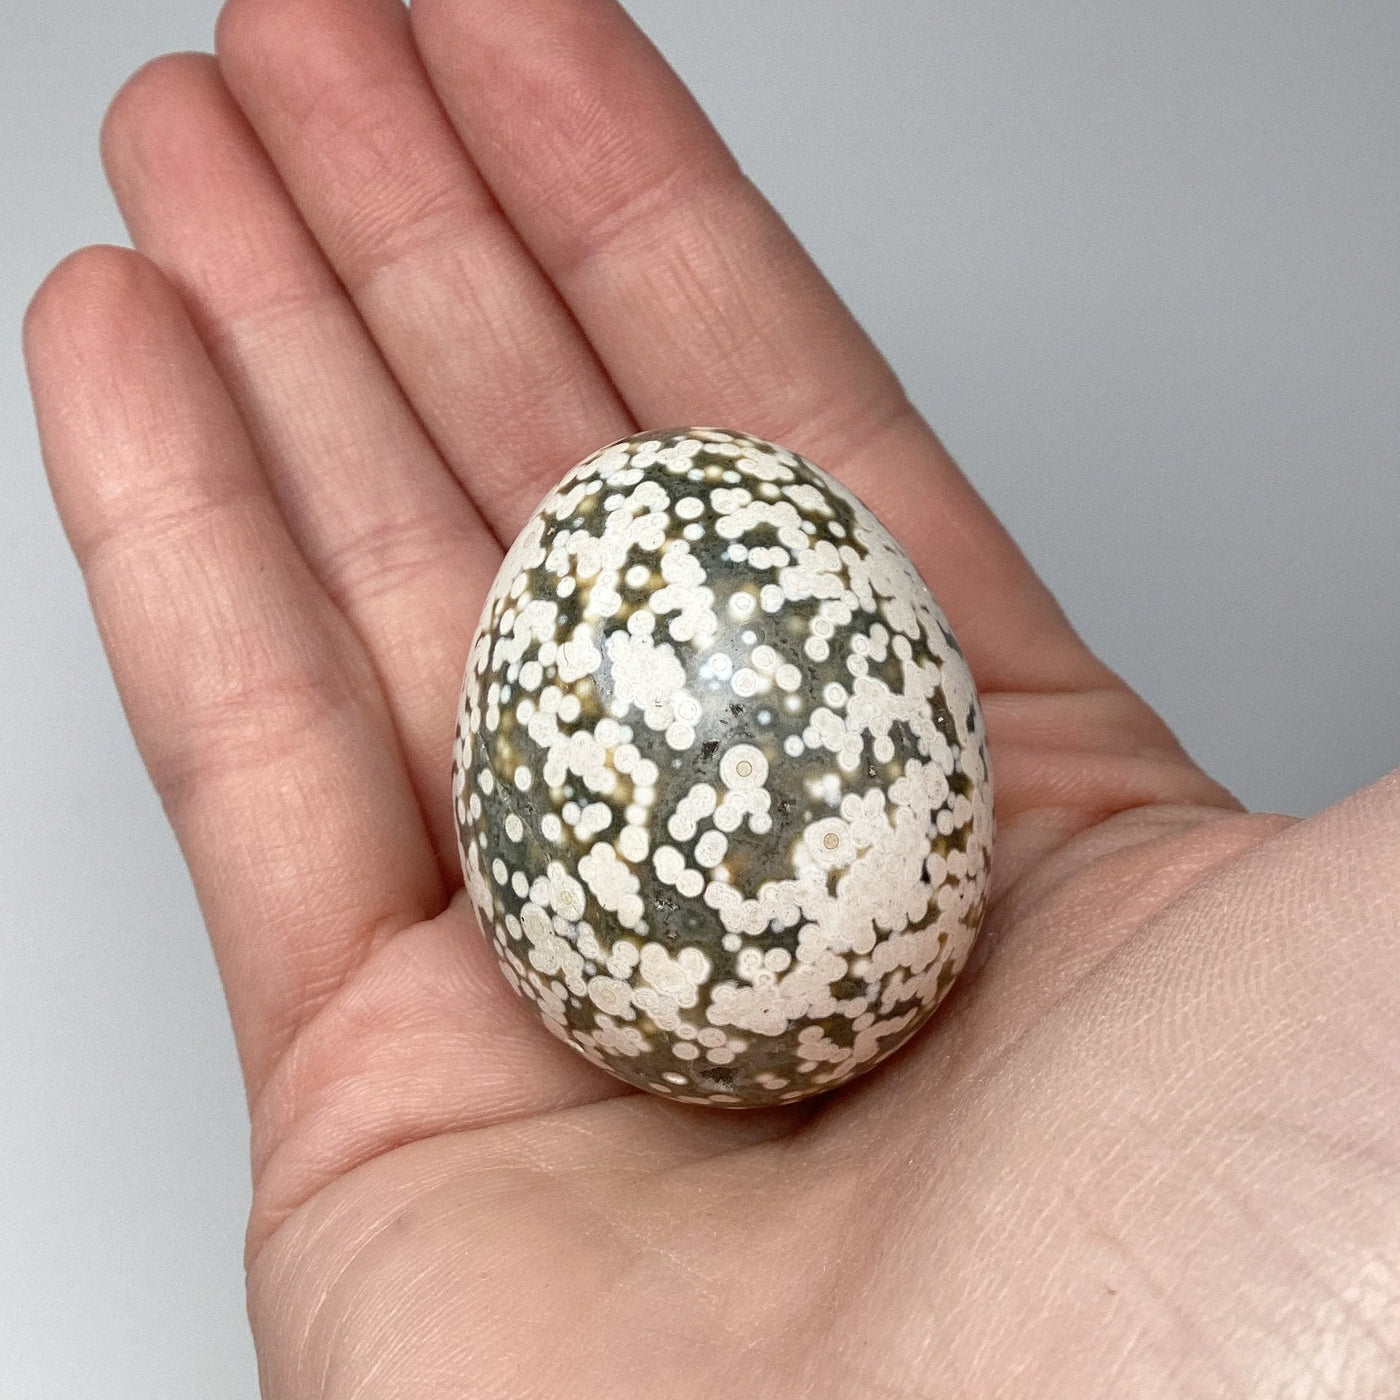 Ocean Jasper Egg